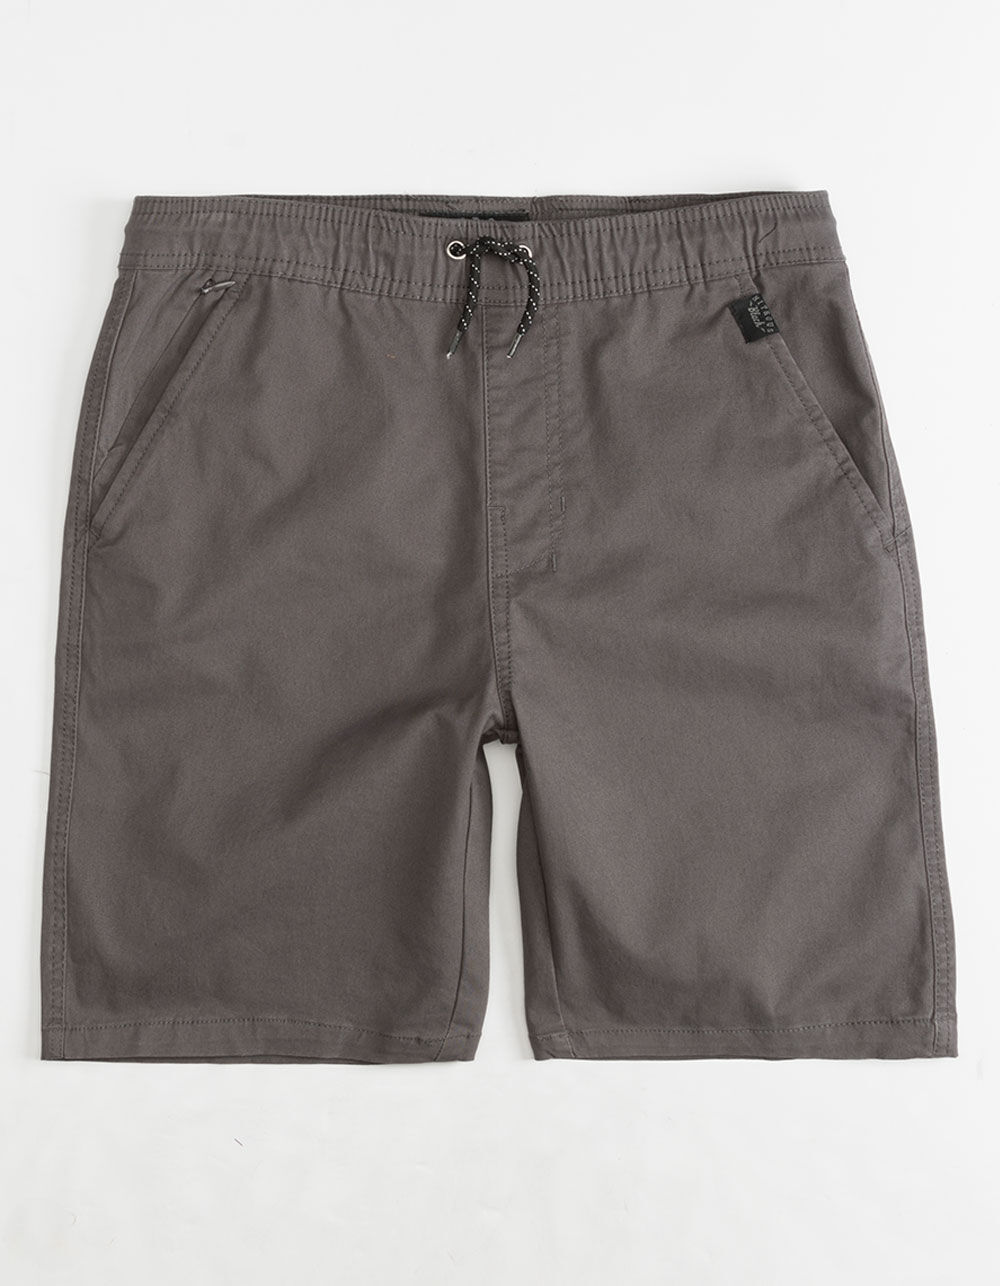 NITROUS BLACK On Point Boys Shorts - CHARCOAL | Tillys